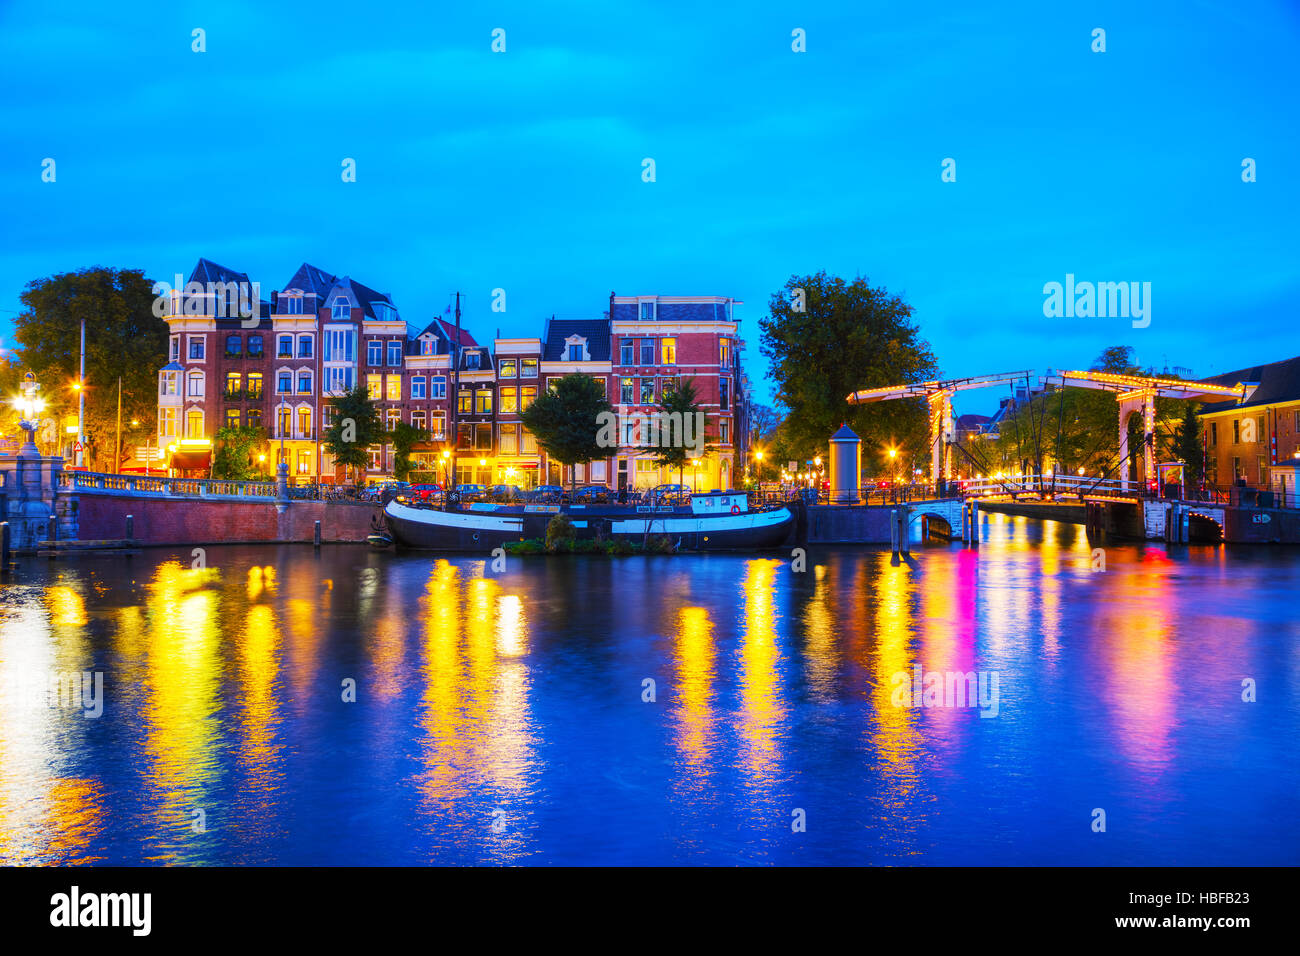 Blick auf die Stadt Amsterdam mit Kanälen und Brücken in der Nacht Stockfoto